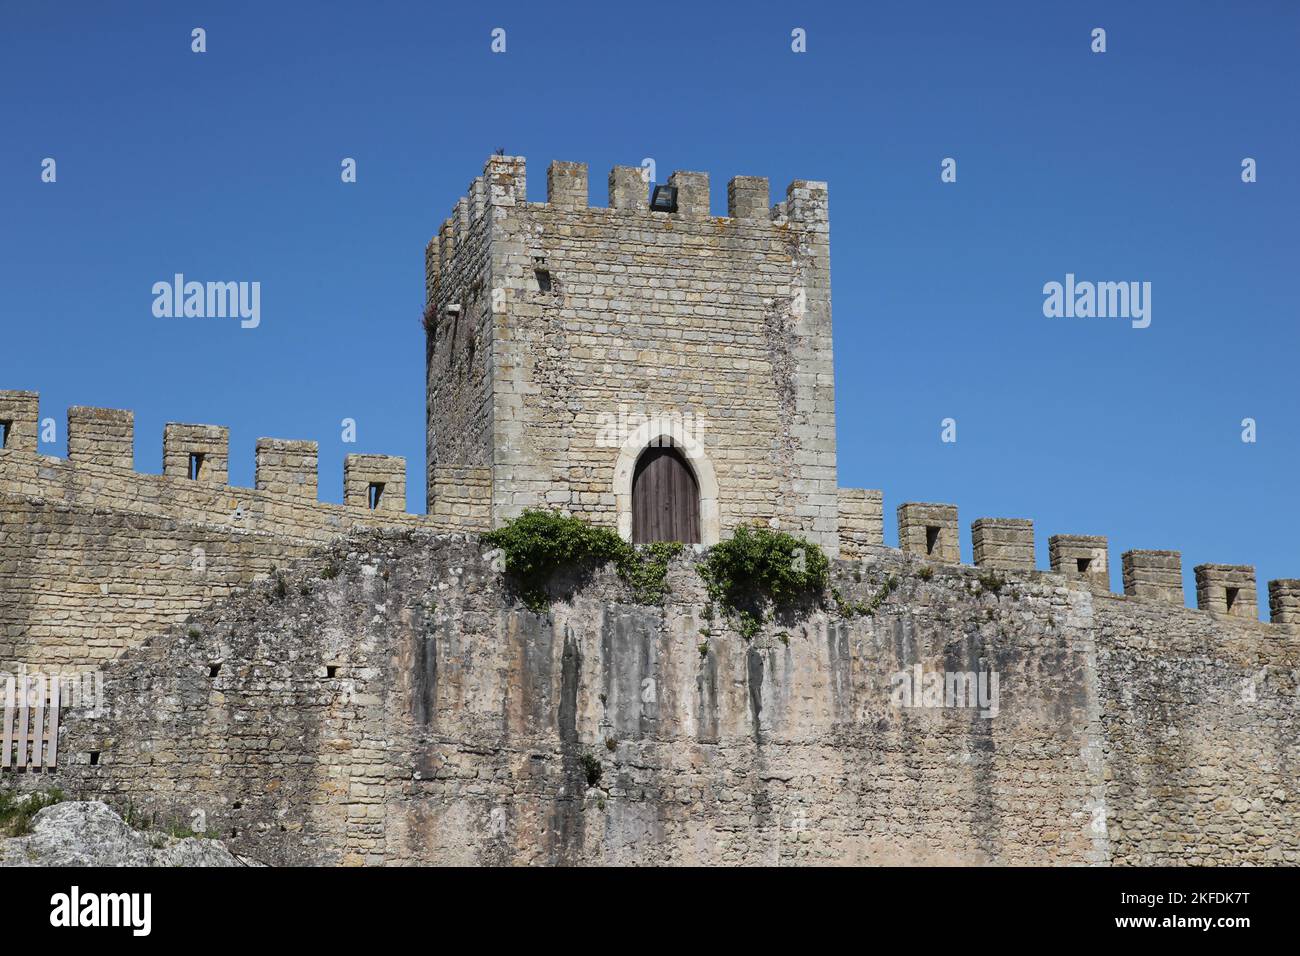 Le mur fortifié en pierre entoure la belle ville portugaise d'Obidos. La ville historique est une destination touristique très populaire dans l'ouest du Portugal. Banque D'Images